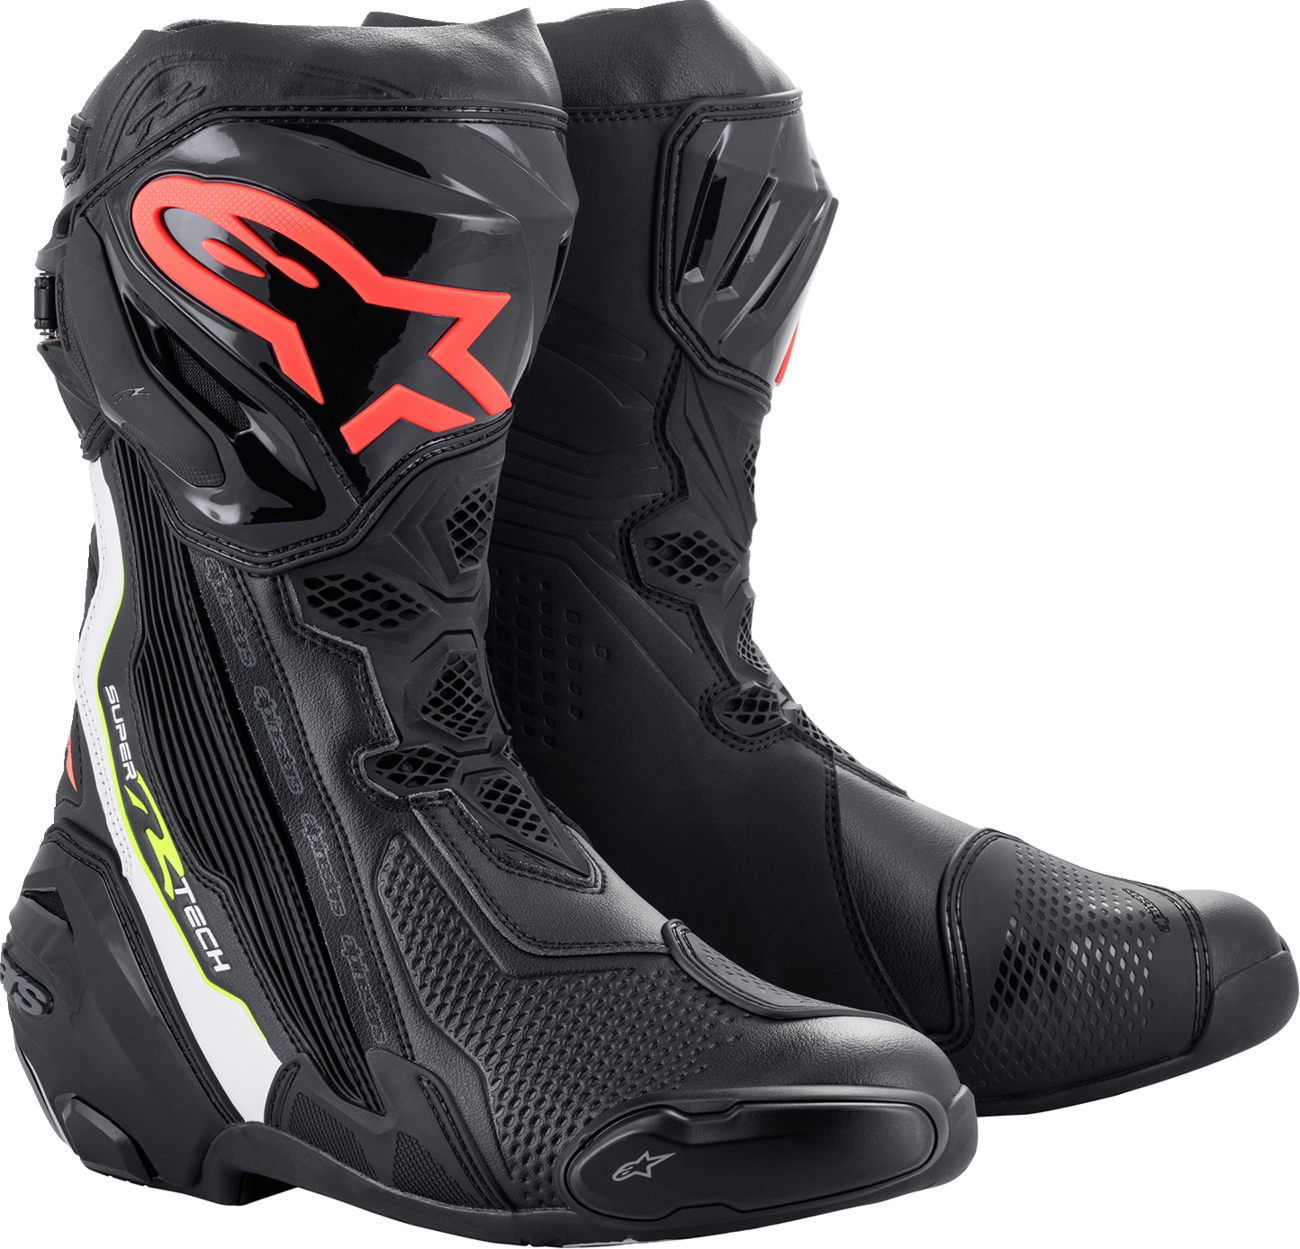 ALPINESTARS Supertech R Boots - Black/Red - US 6 / EU 39 2220021-1236-39